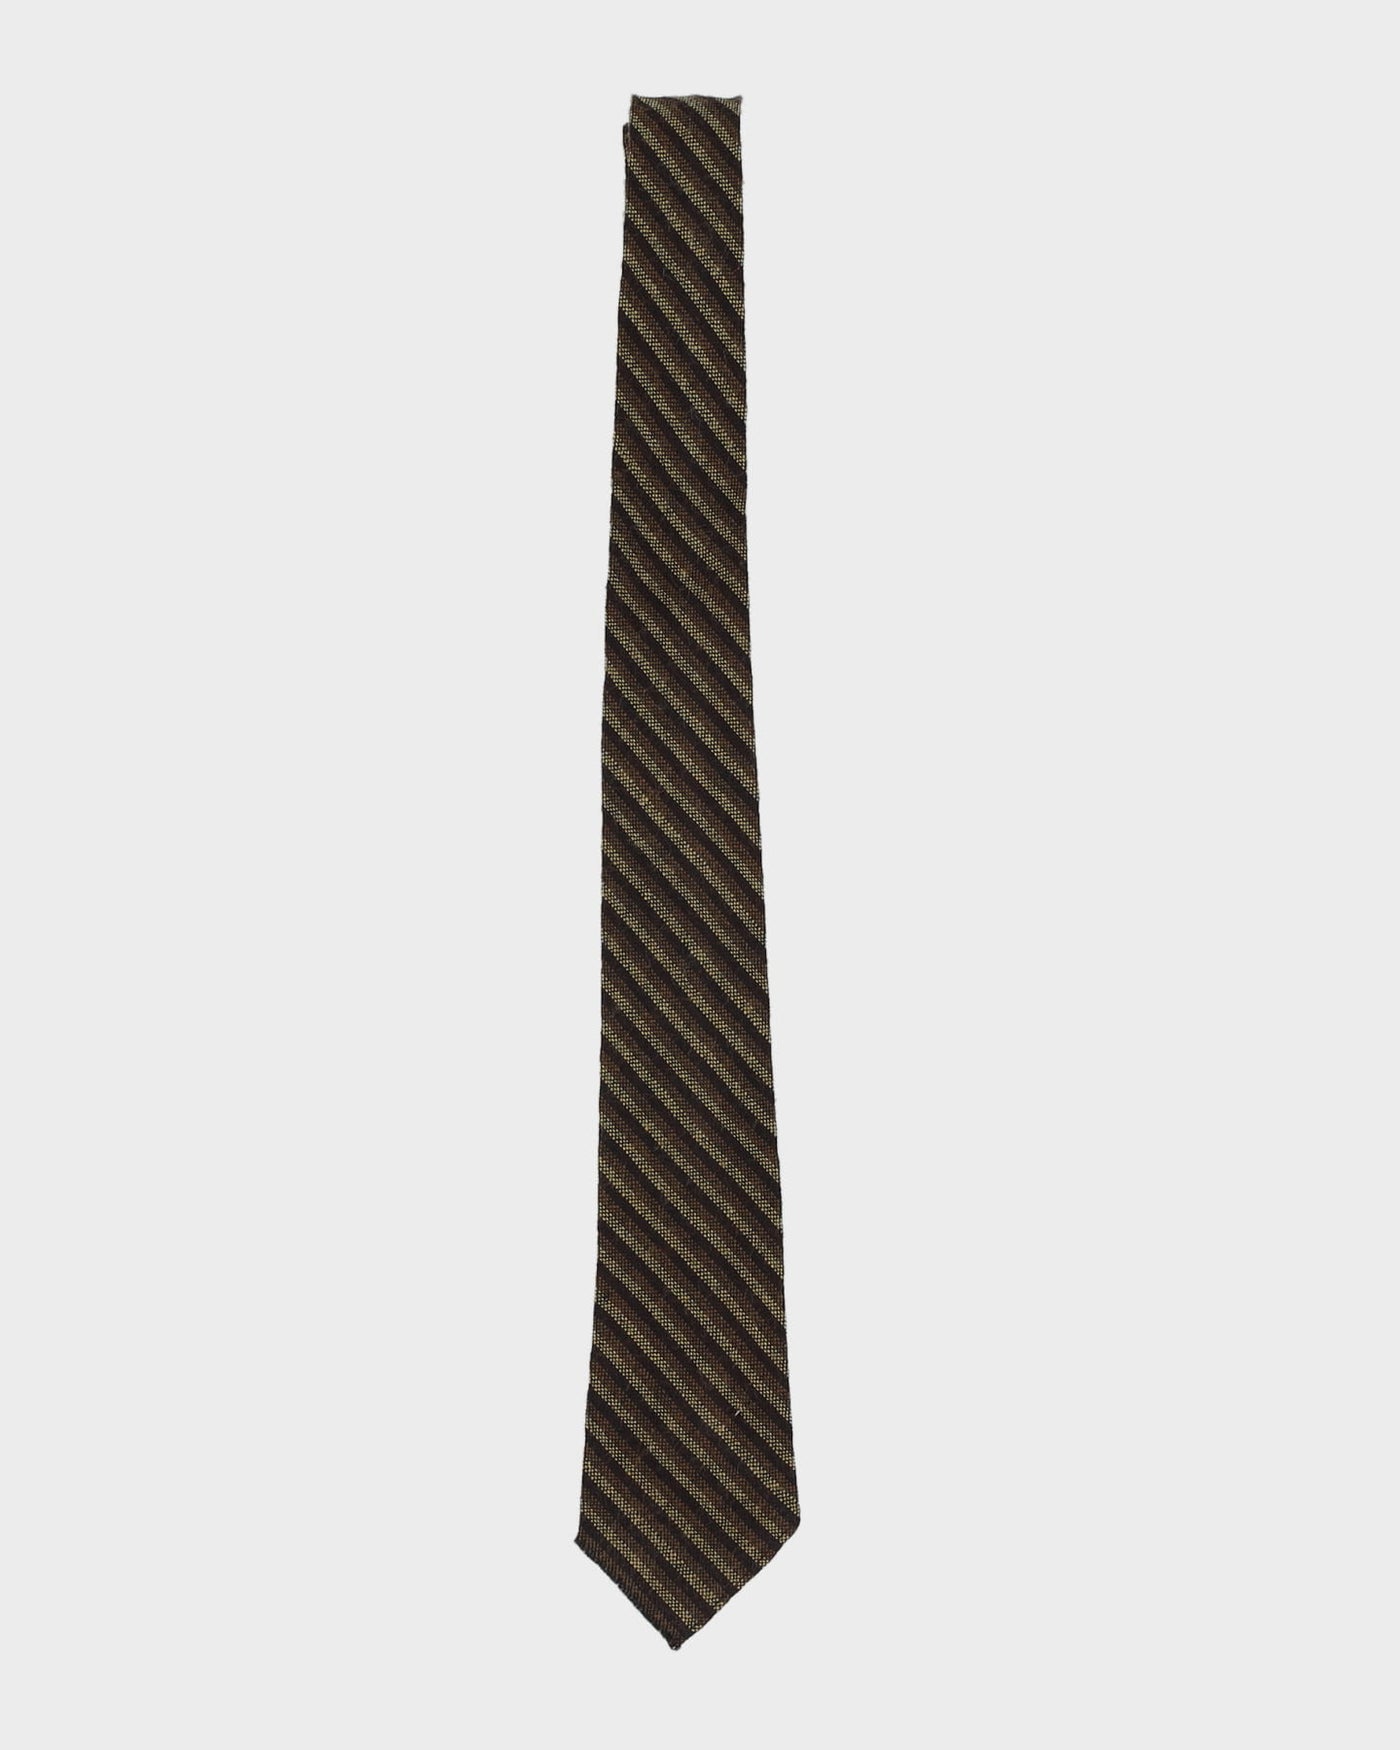 Vintage 60s Green / Brown Stripe Patterned Tie